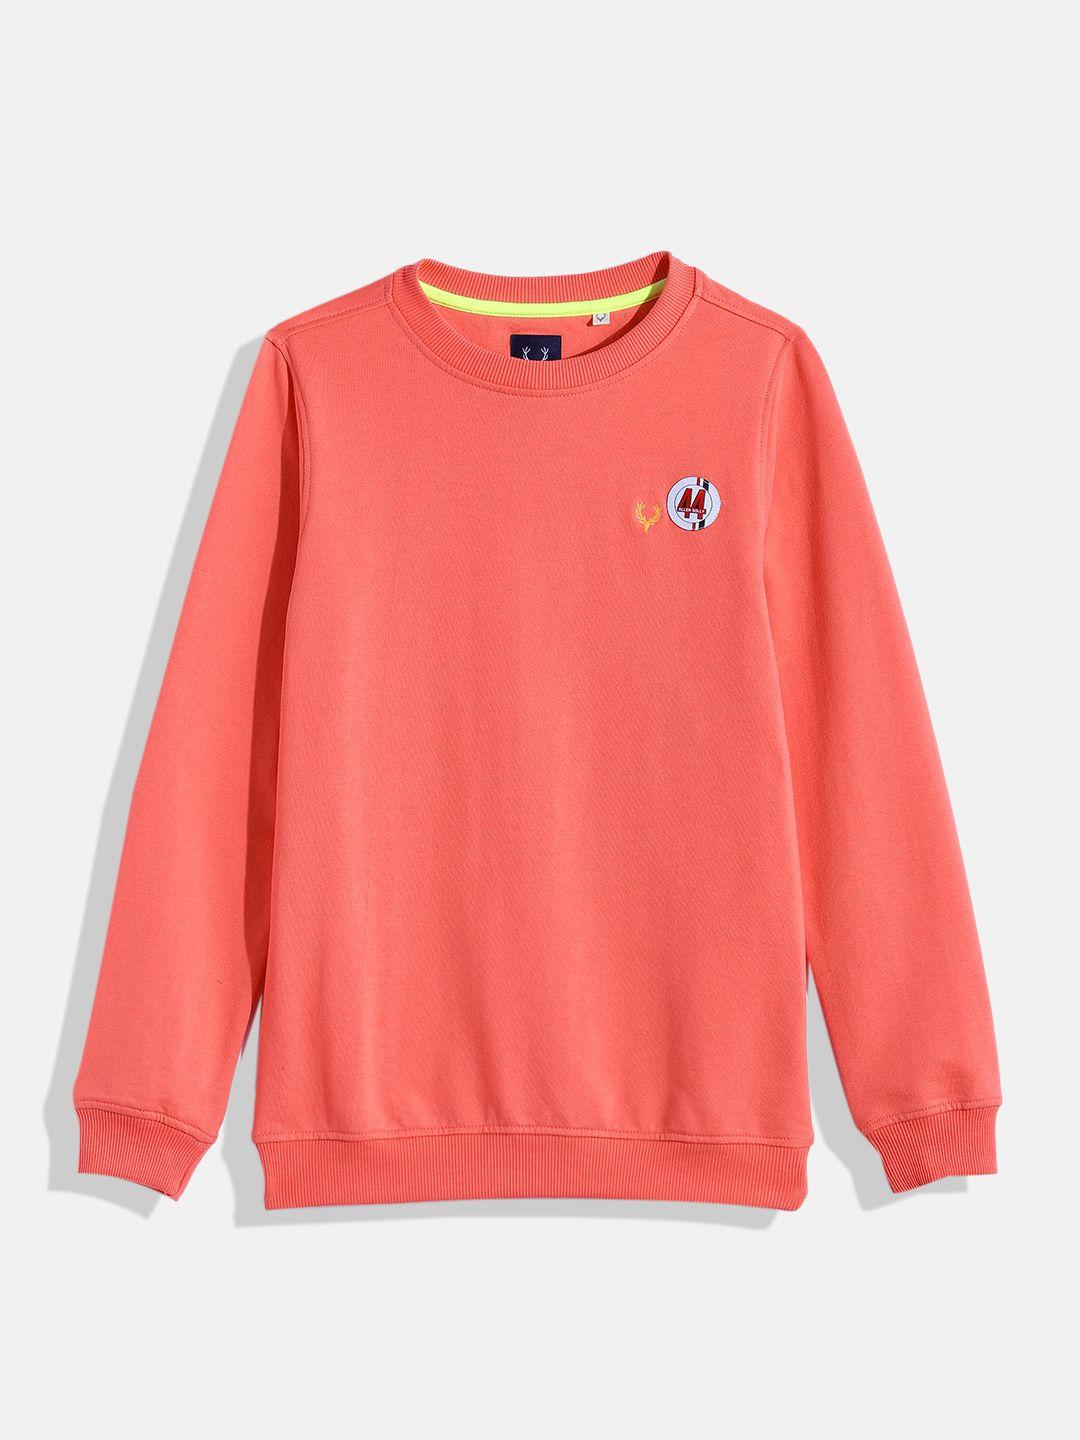 allen-solly-junior-boys-coral-pink-sweatshirt